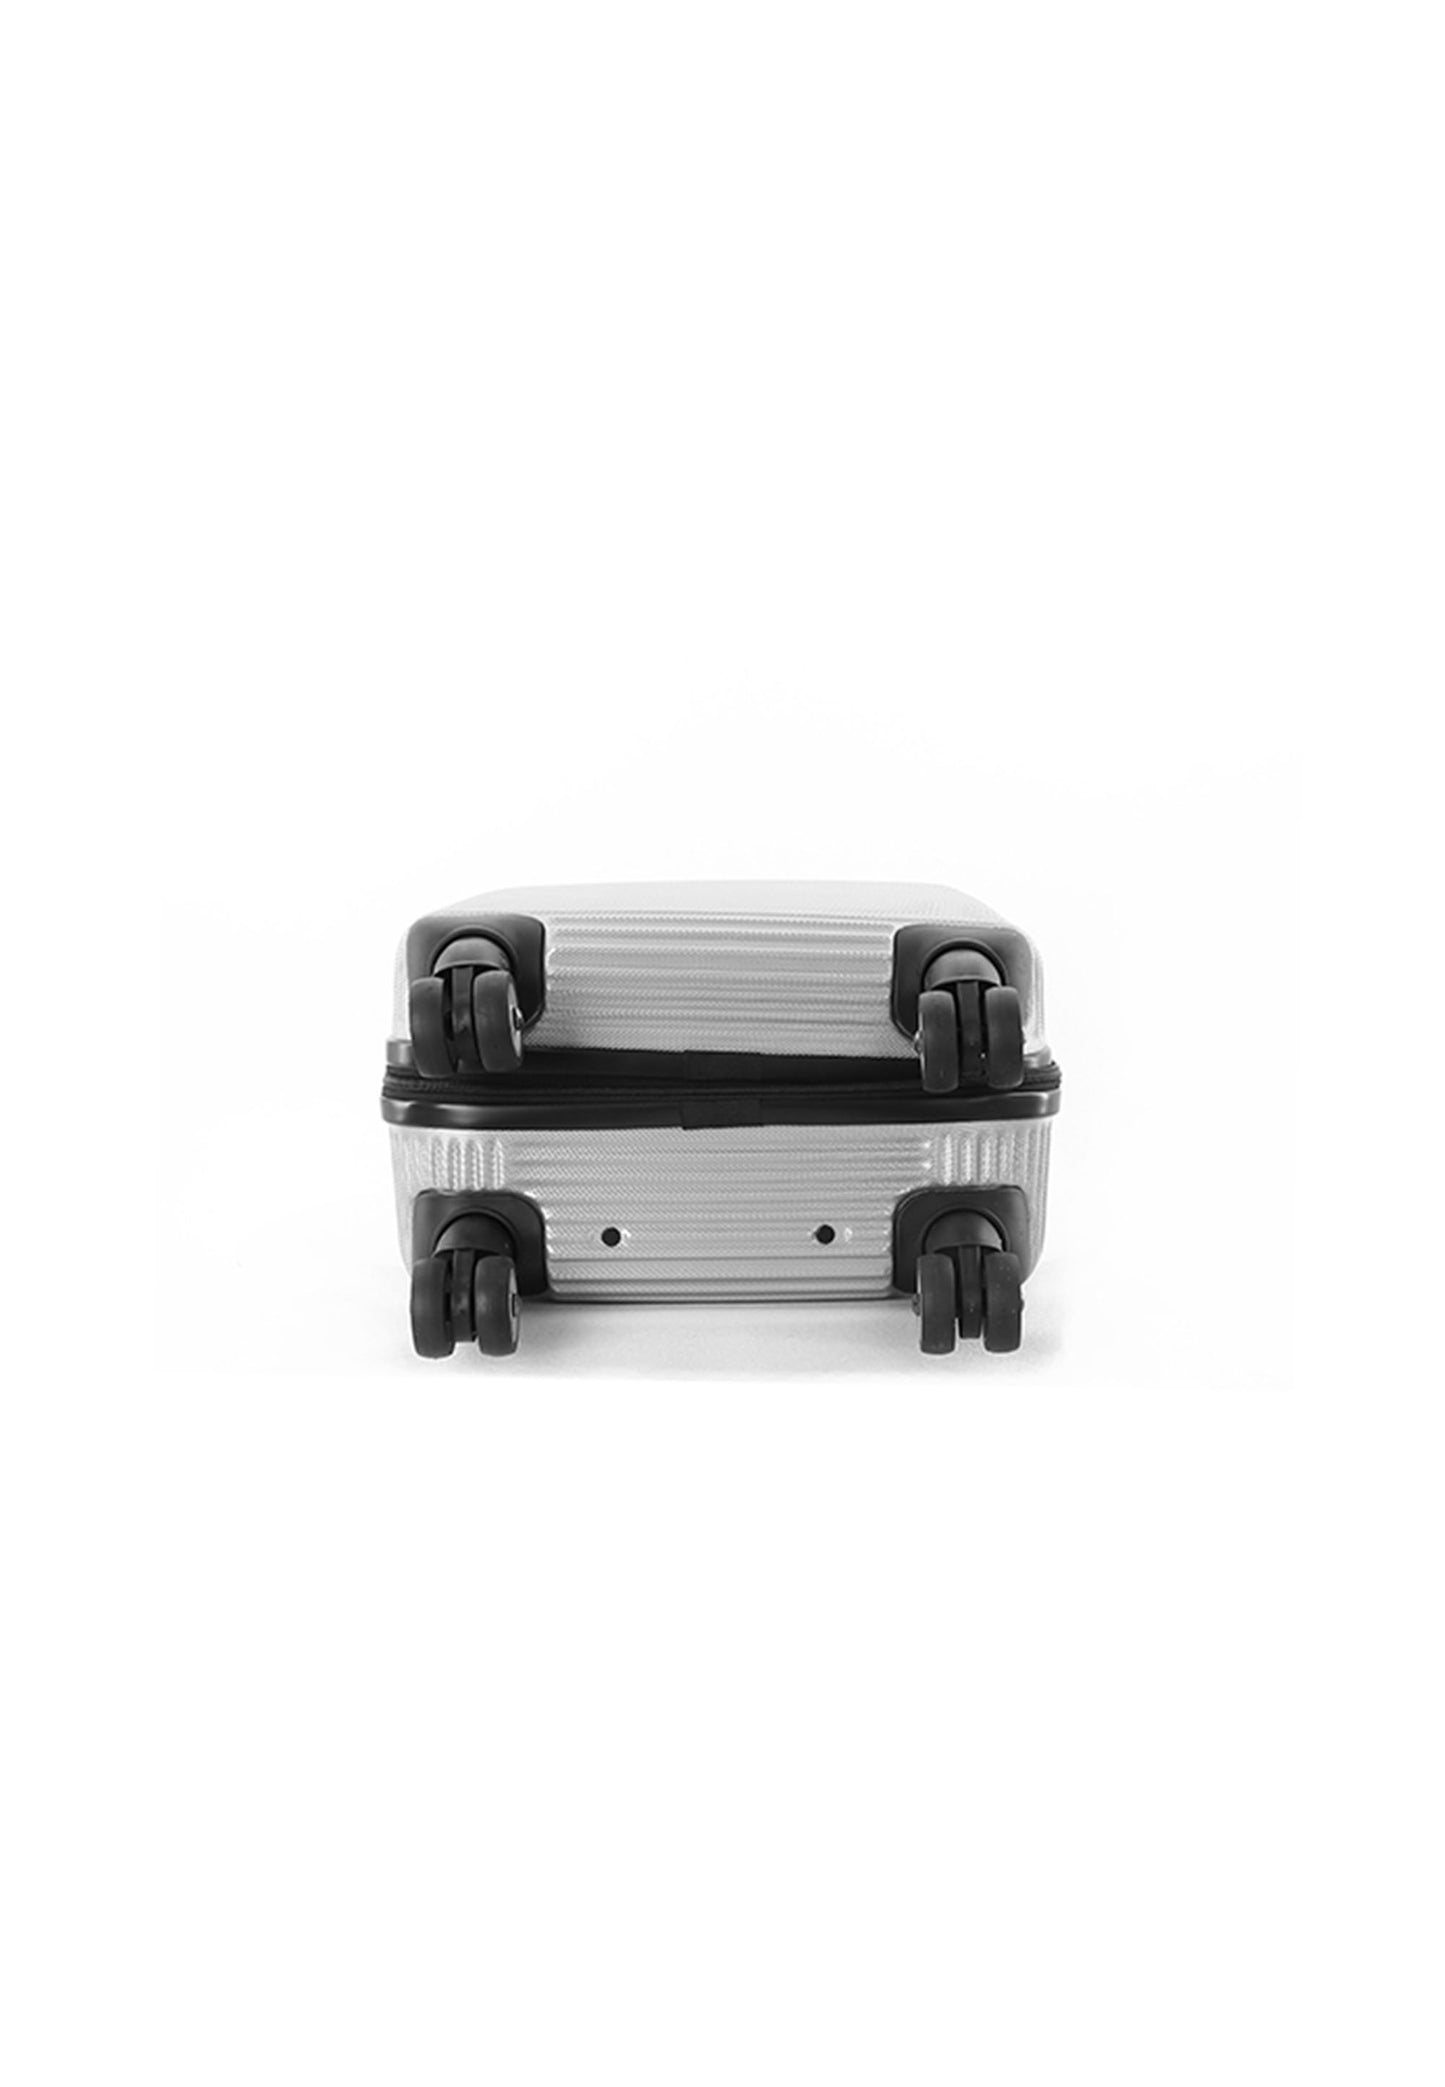 Valise rigide pour bagage à main National Geographic / Trolley / Valise de voyage - 55 cm (Petite) - À l'étranger - Argent